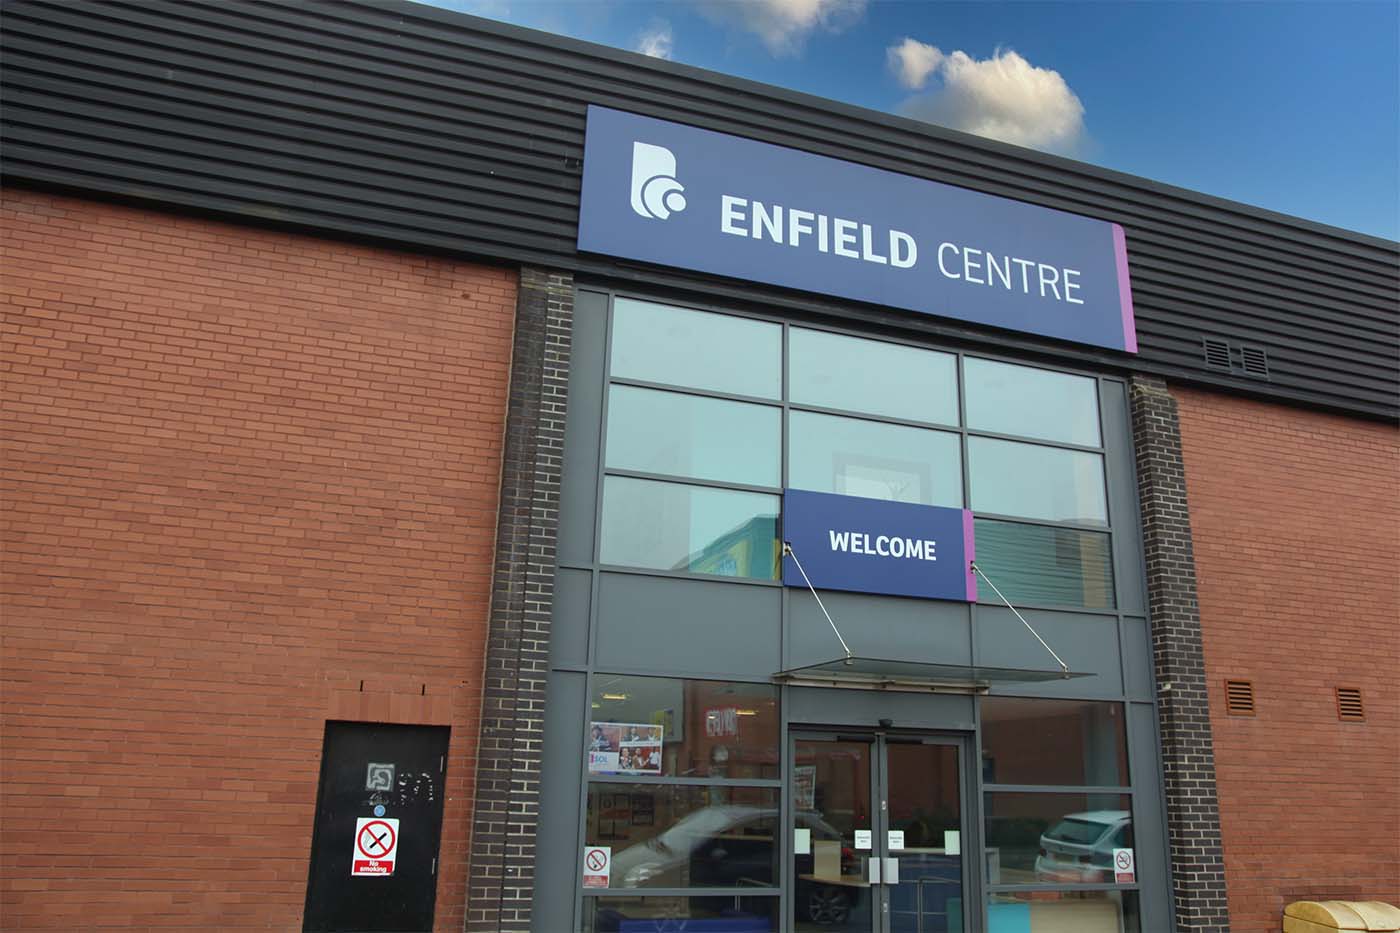 Leeds City College Enfield Centre building